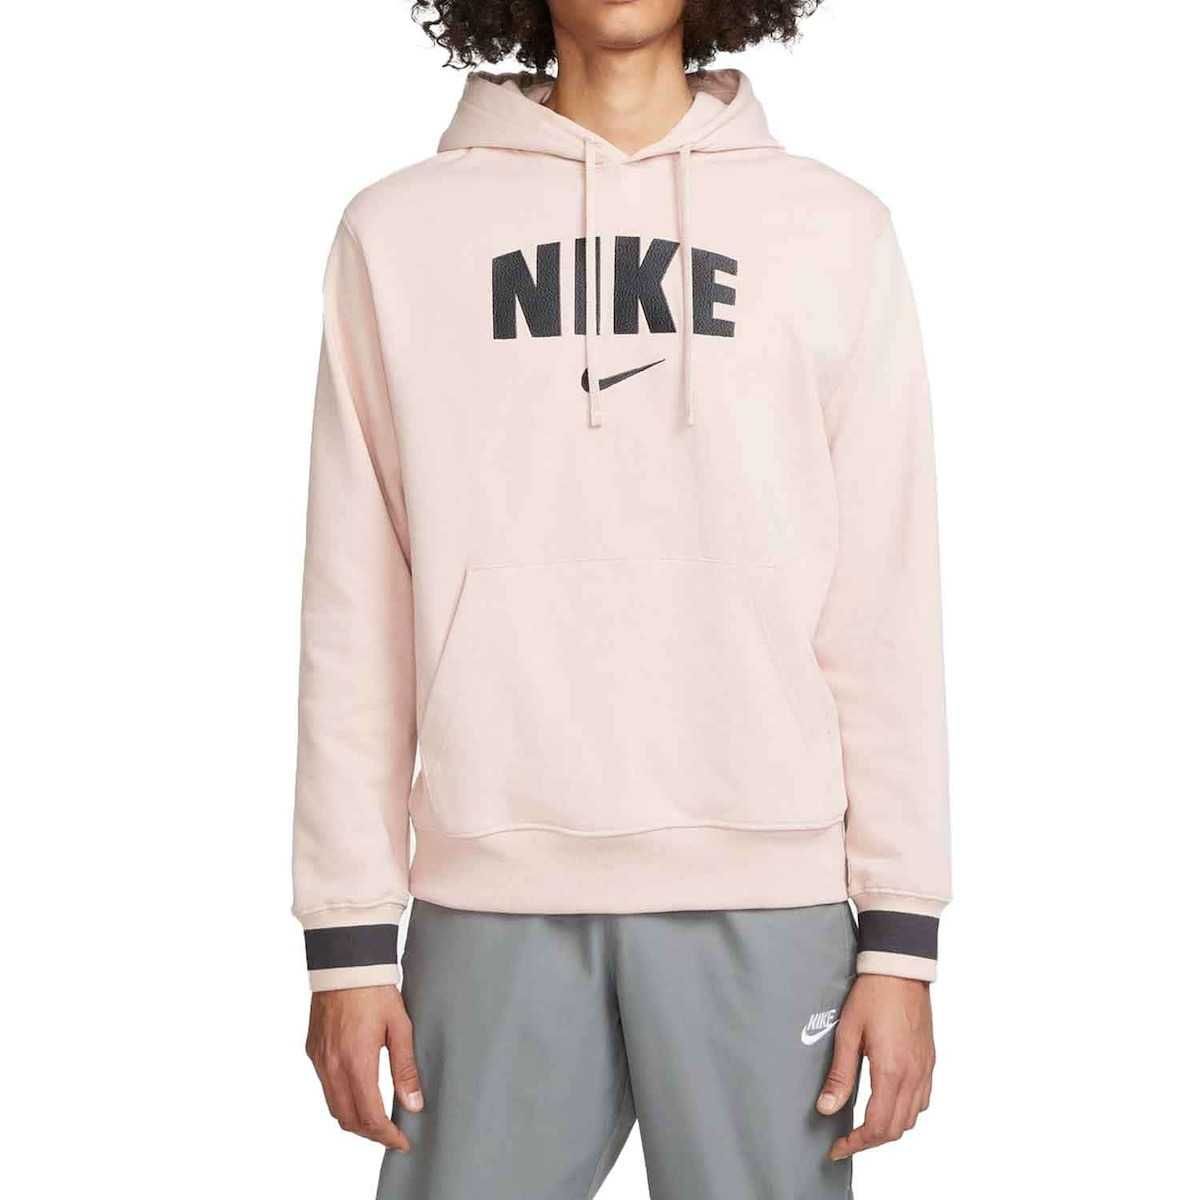 Hanorac Nike Sportswear , originale, noi, S,M,L,XL